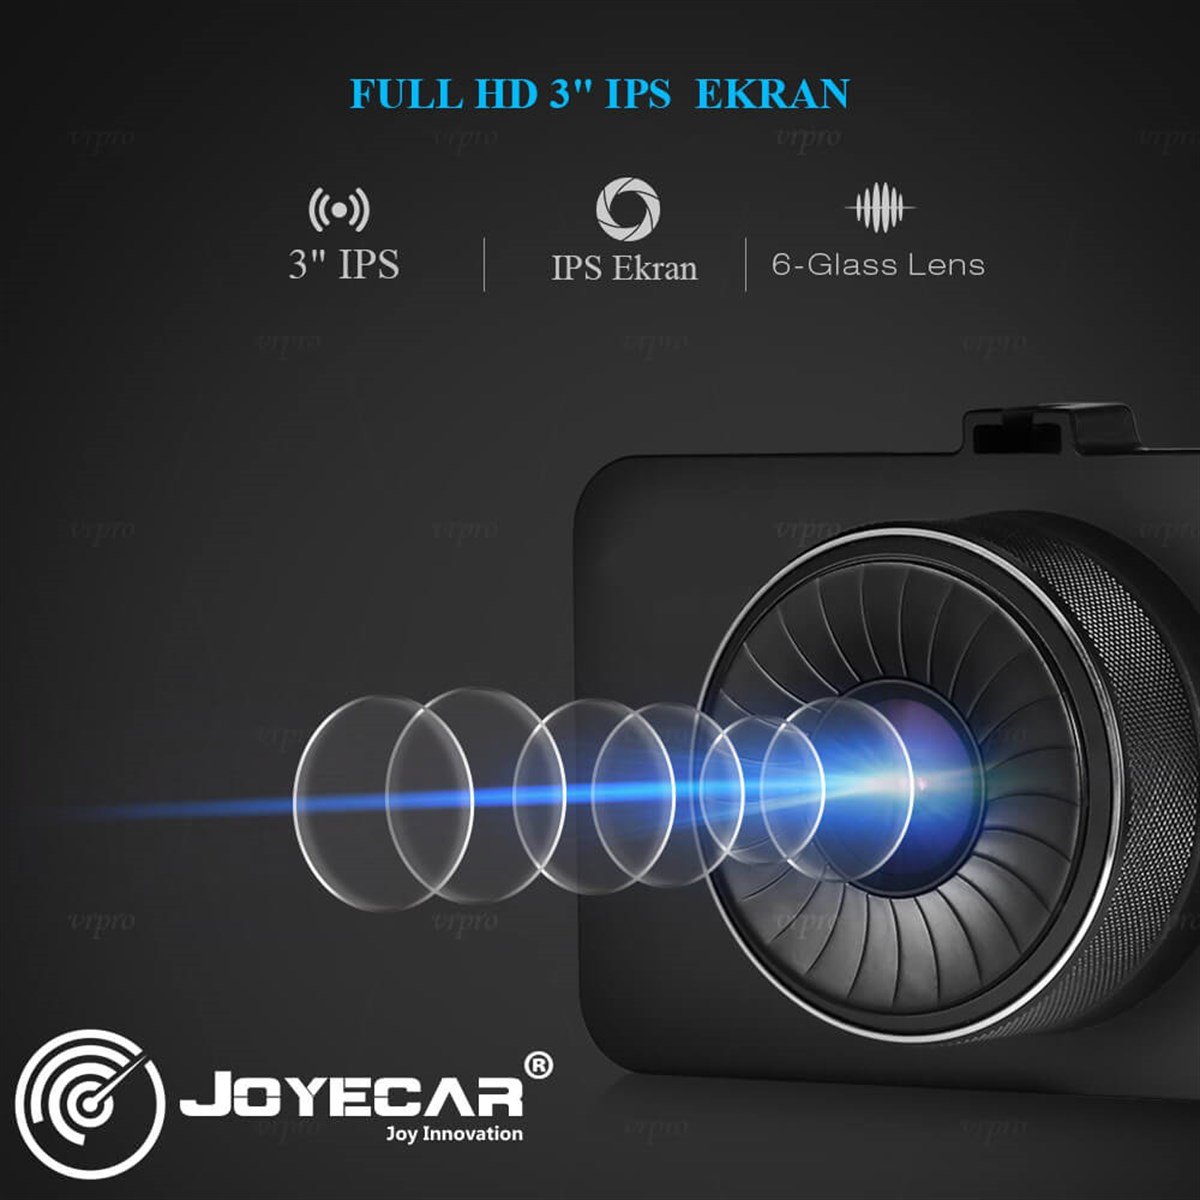 F8 3 Inç IPs Ekran Dual Lens Araç İçi Kamera 2 Yıl Garanti - Joyecar